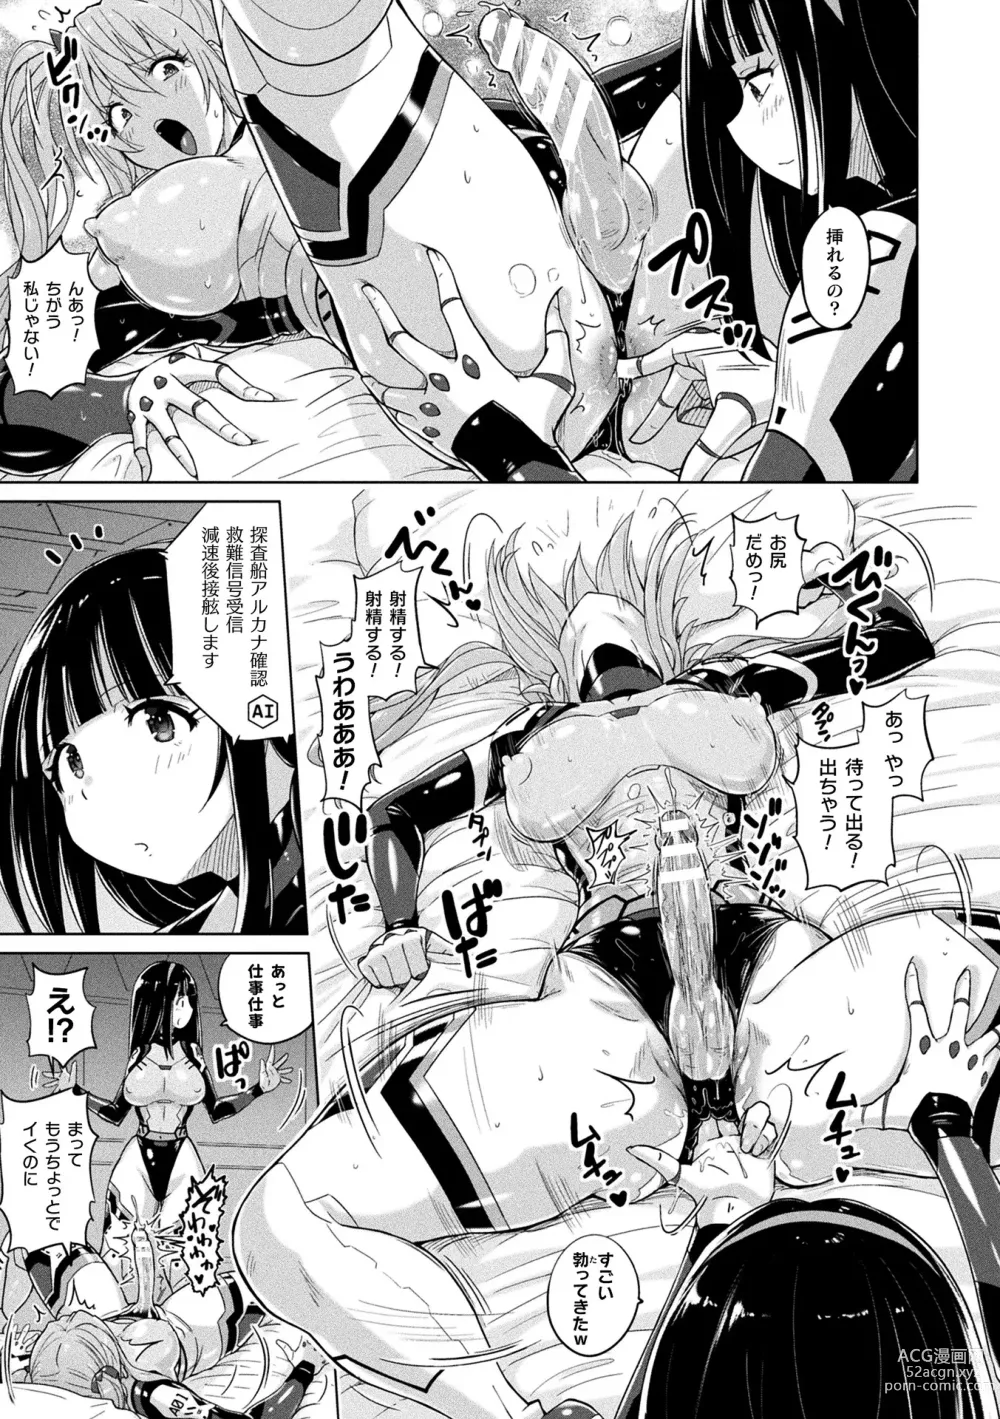 Page 7 of manga Picchiri Pantsism